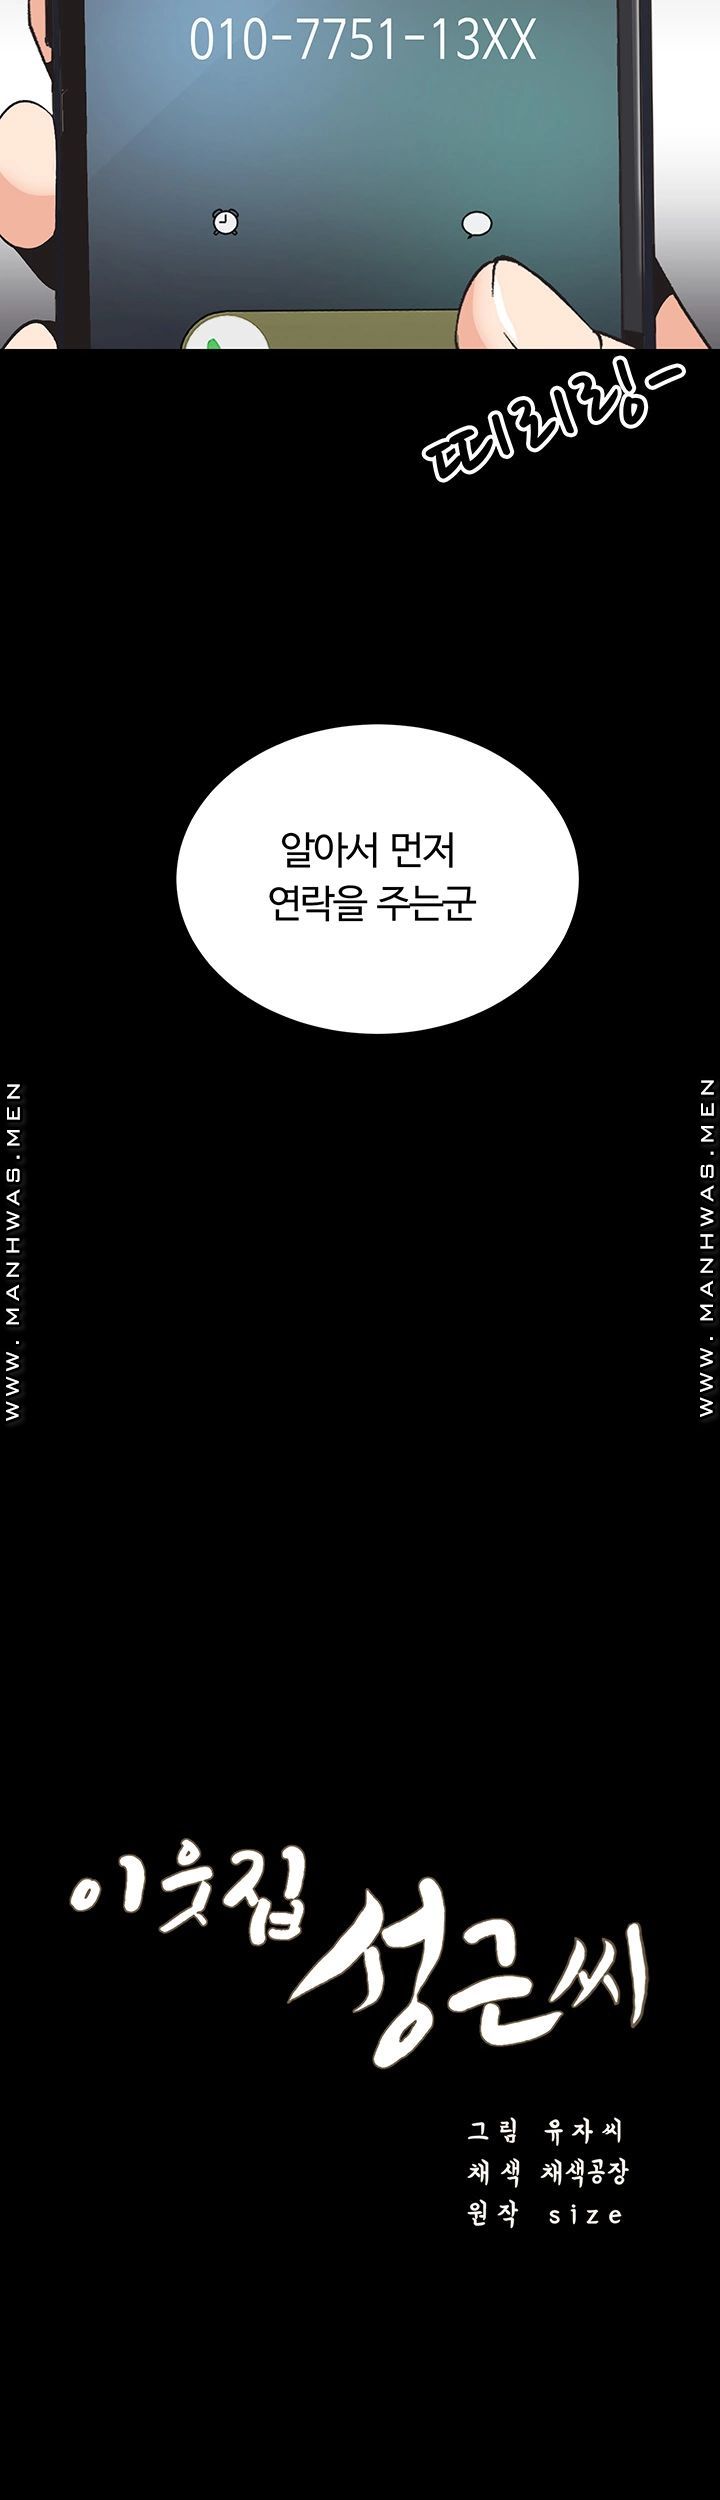 Neighboring Houses Seonggeun Raw - Chapter 5 Page 4